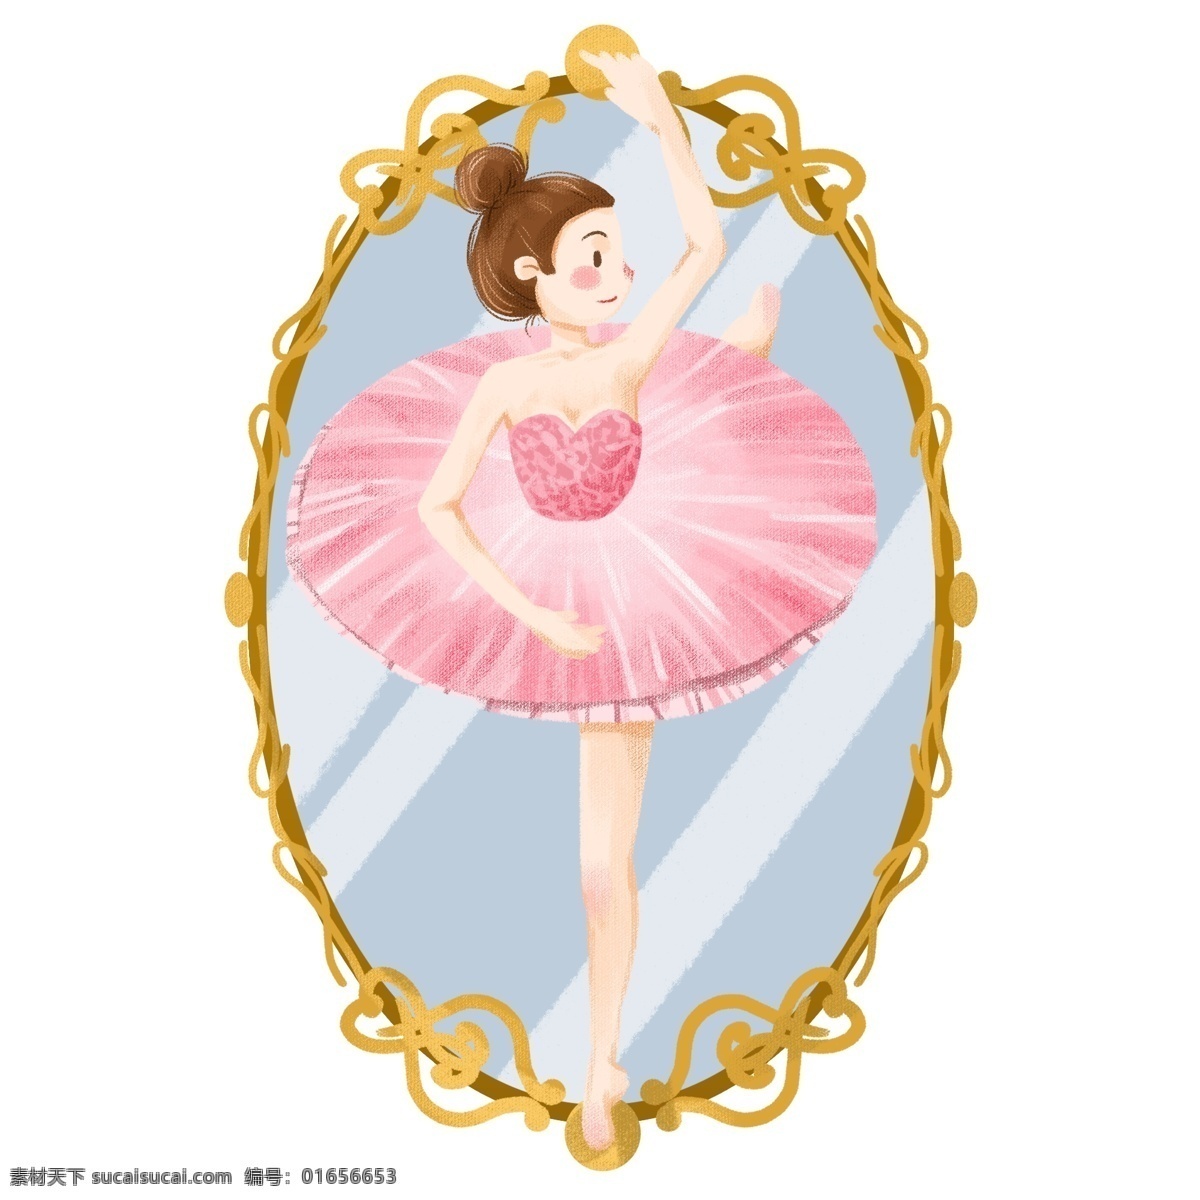 手绘 卡通 女孩 芭蕾舞 演员 舞蹈 芭蕾 跳舞 镜子 精致